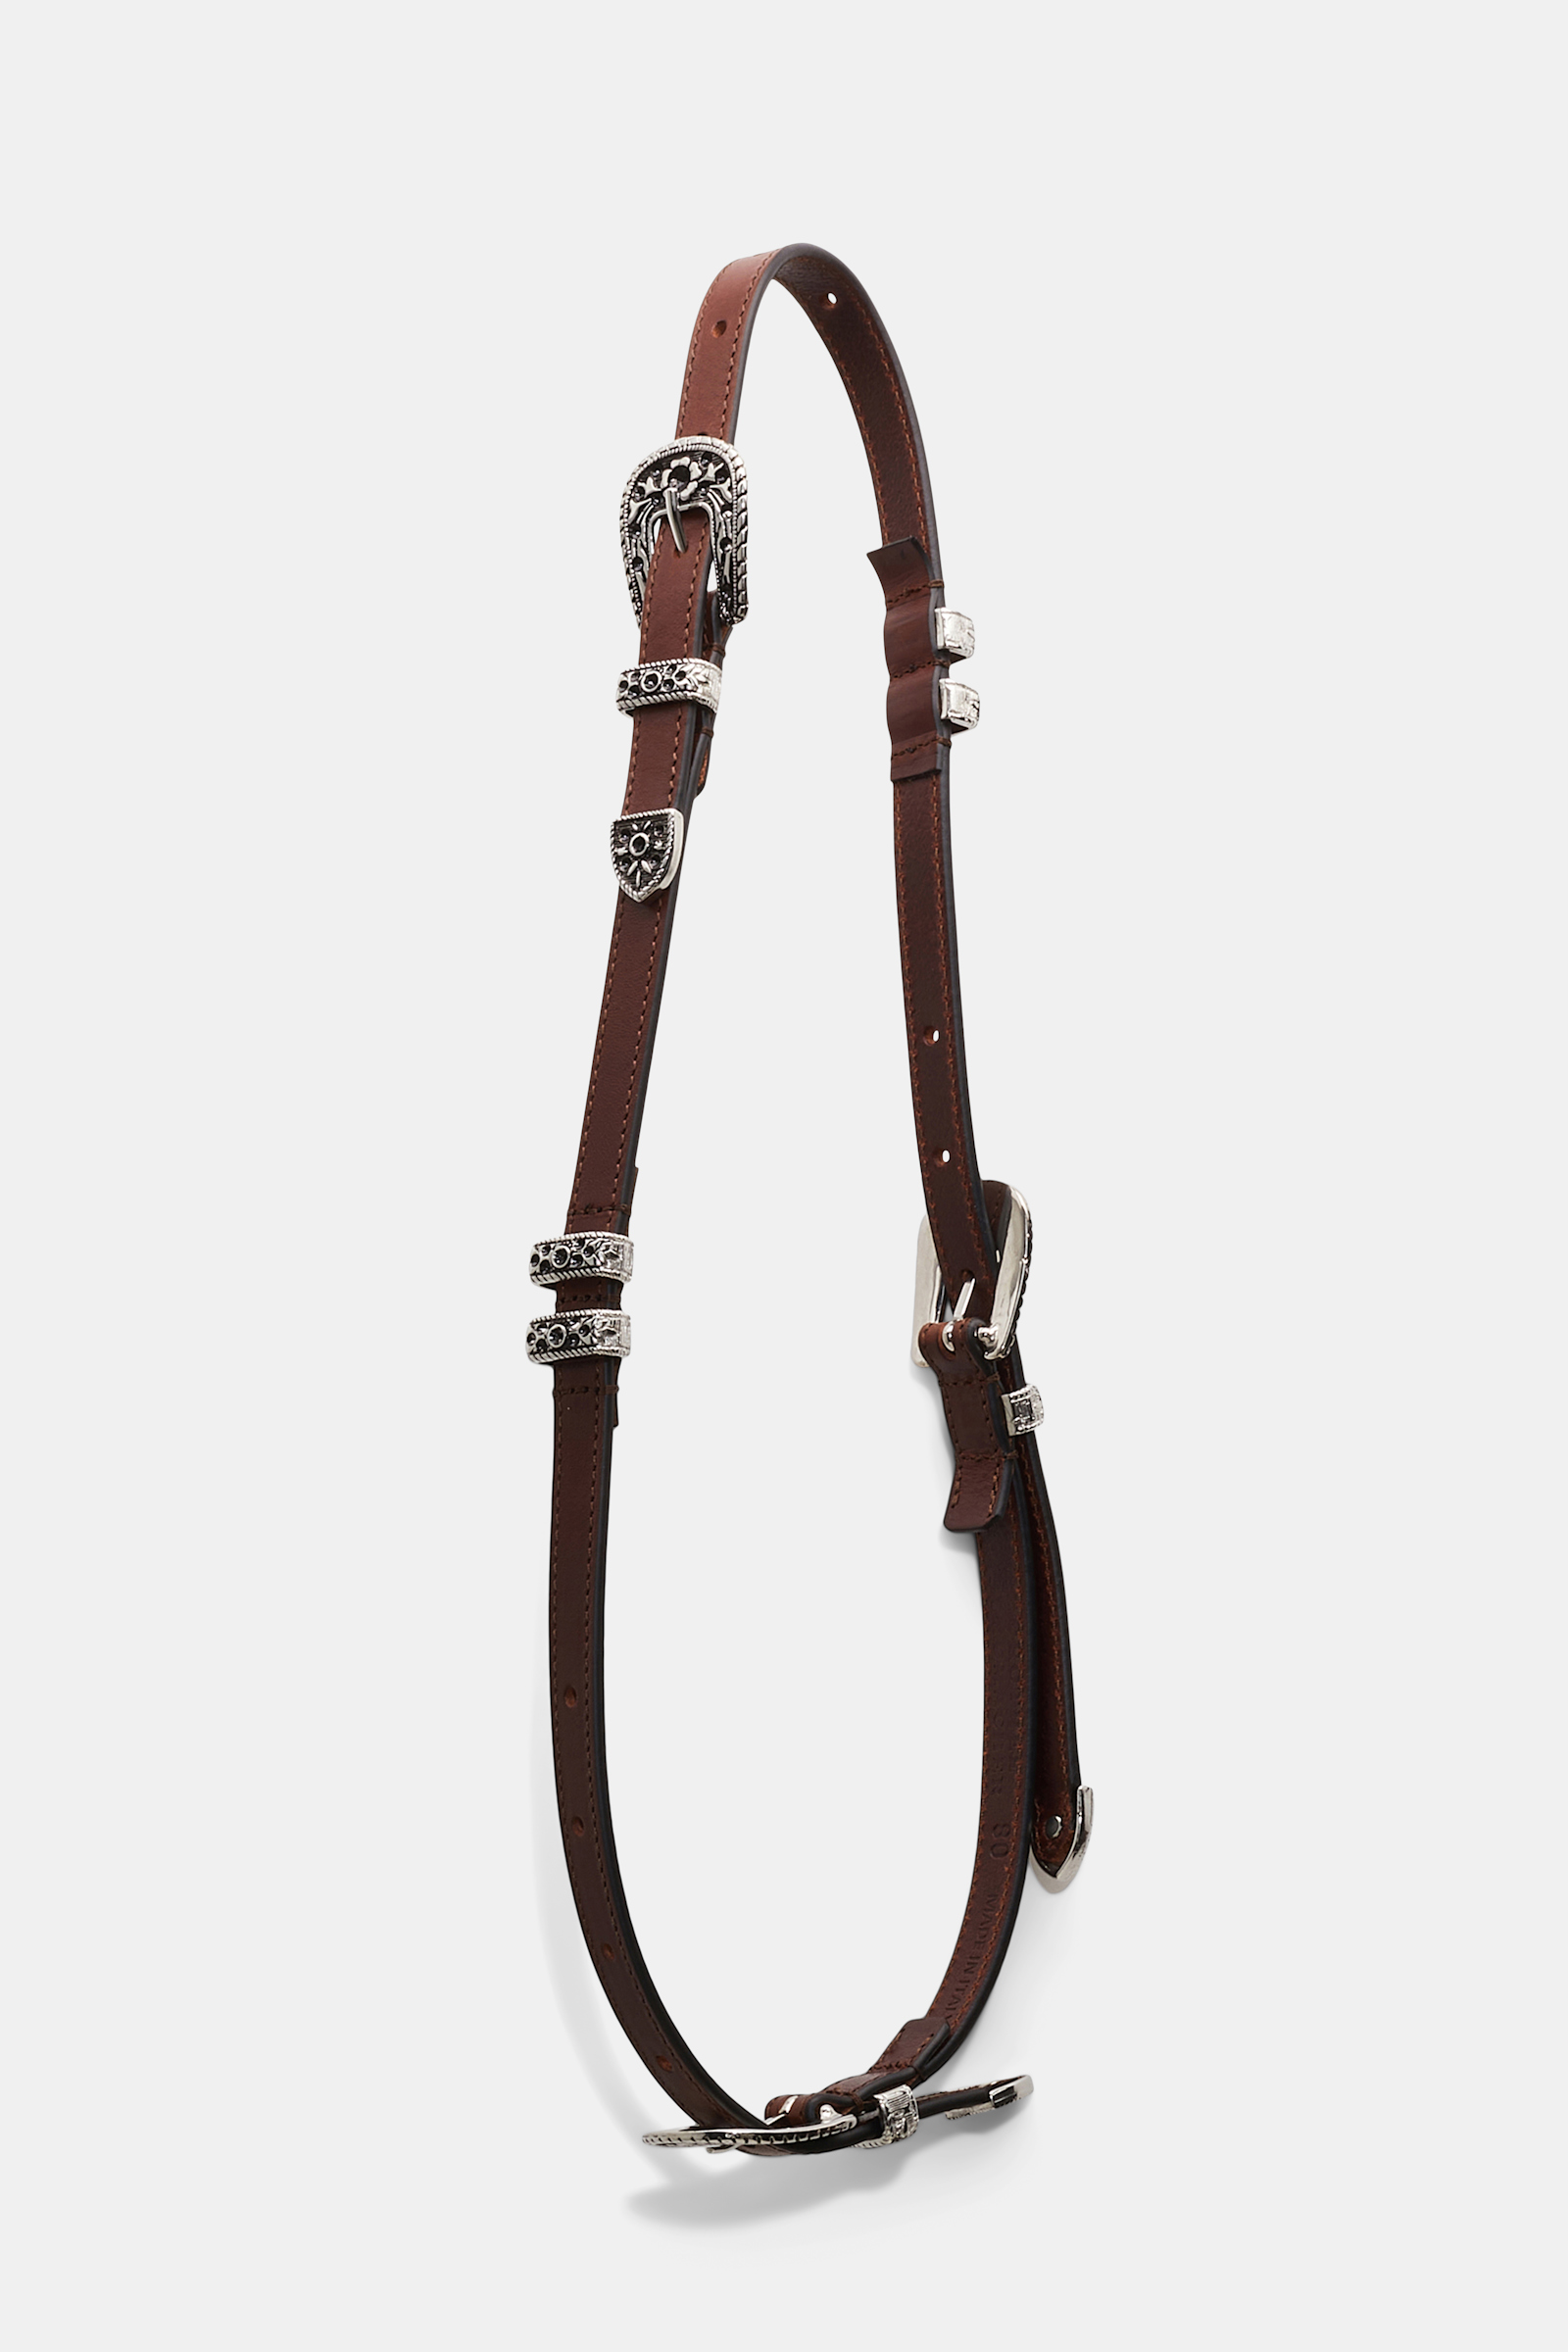 Dorothee Schumacher Calfskin belt with multiple buckles brown